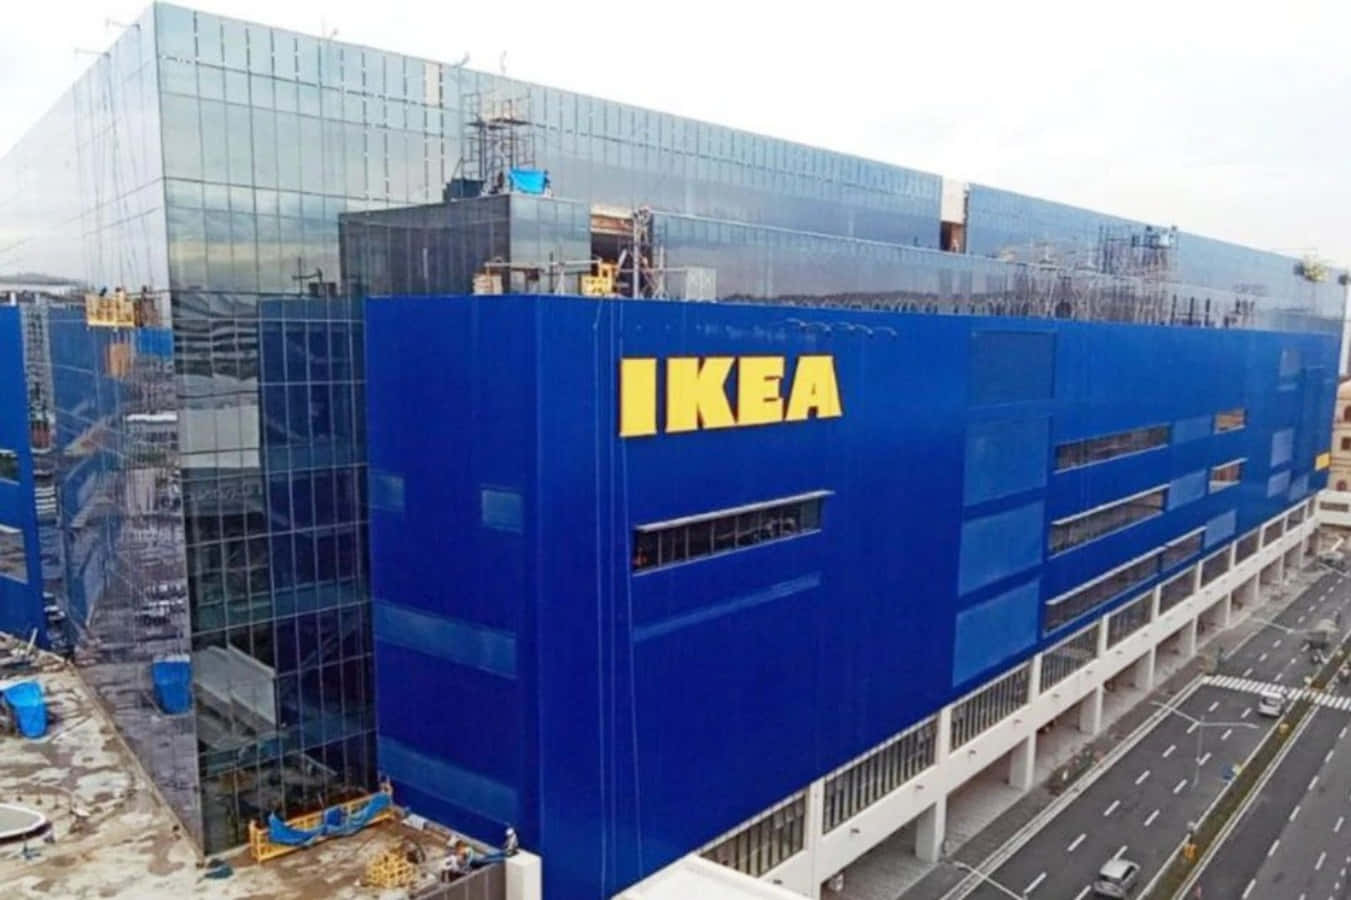 Ikea'snya Butik I Hongkong